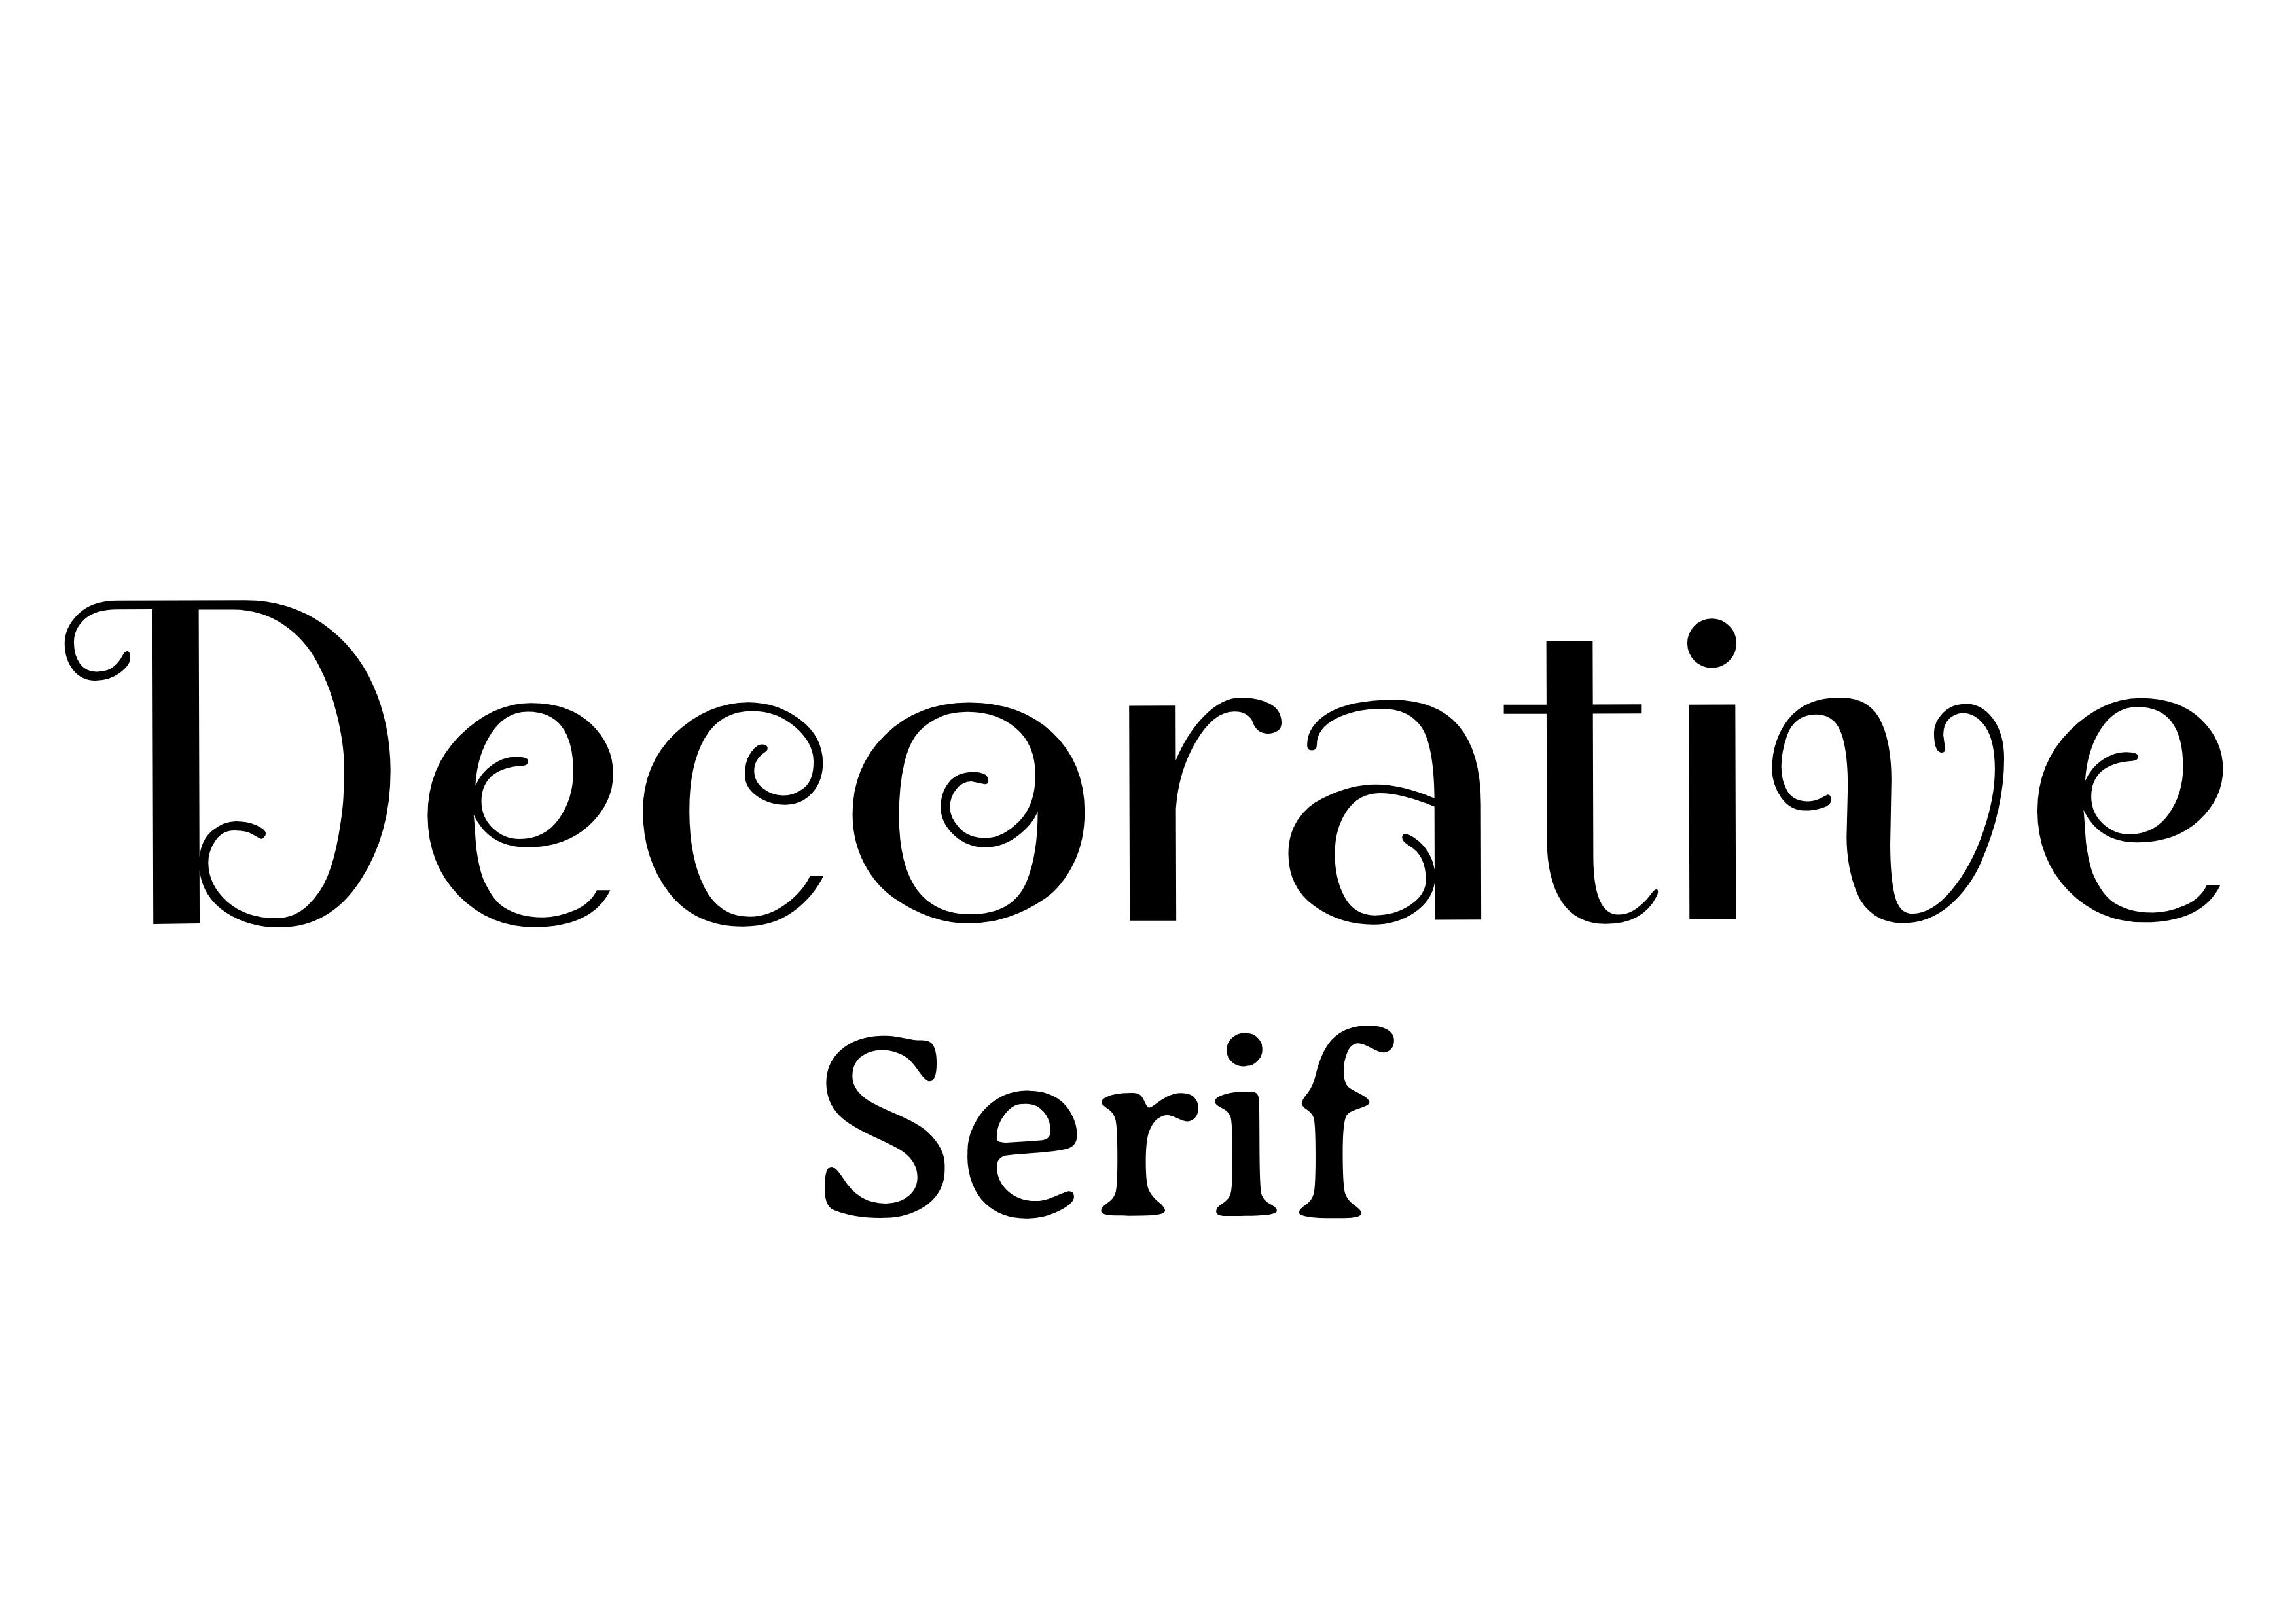 Emparelhamento de Fontes - 'Decorativo' no centro em preto com 'Serif' em preto abaixo, menor - O guia completo de fontes: 5 tipos essenciais de fontes em tipografia - Imagem